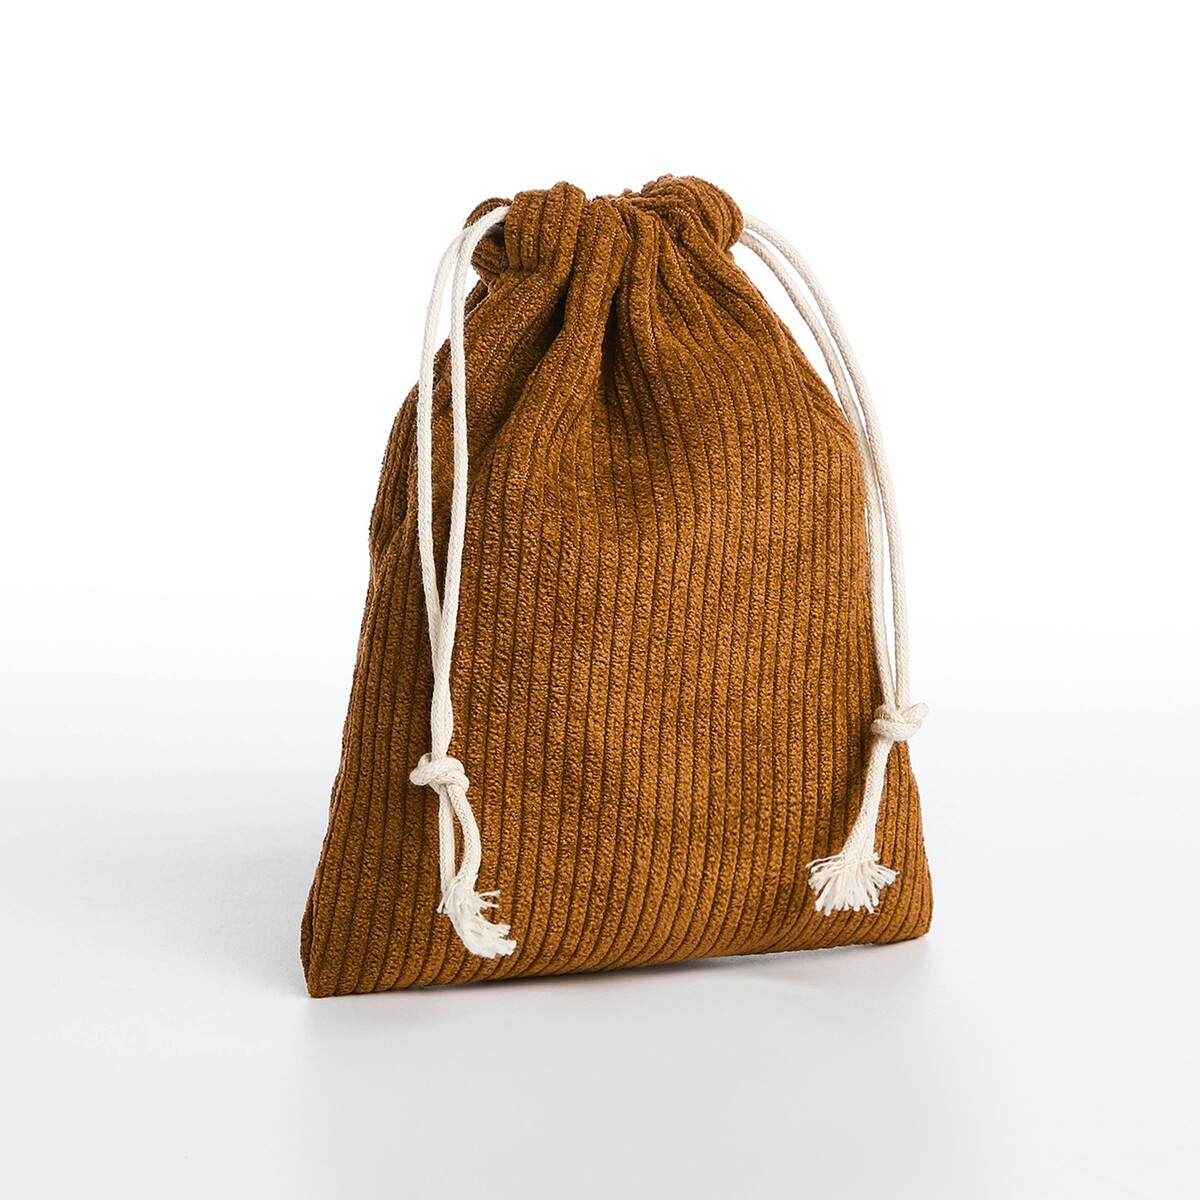 Косметичка - мешок с завязками, цвет коричневый сумка мешок на молнии коричневый